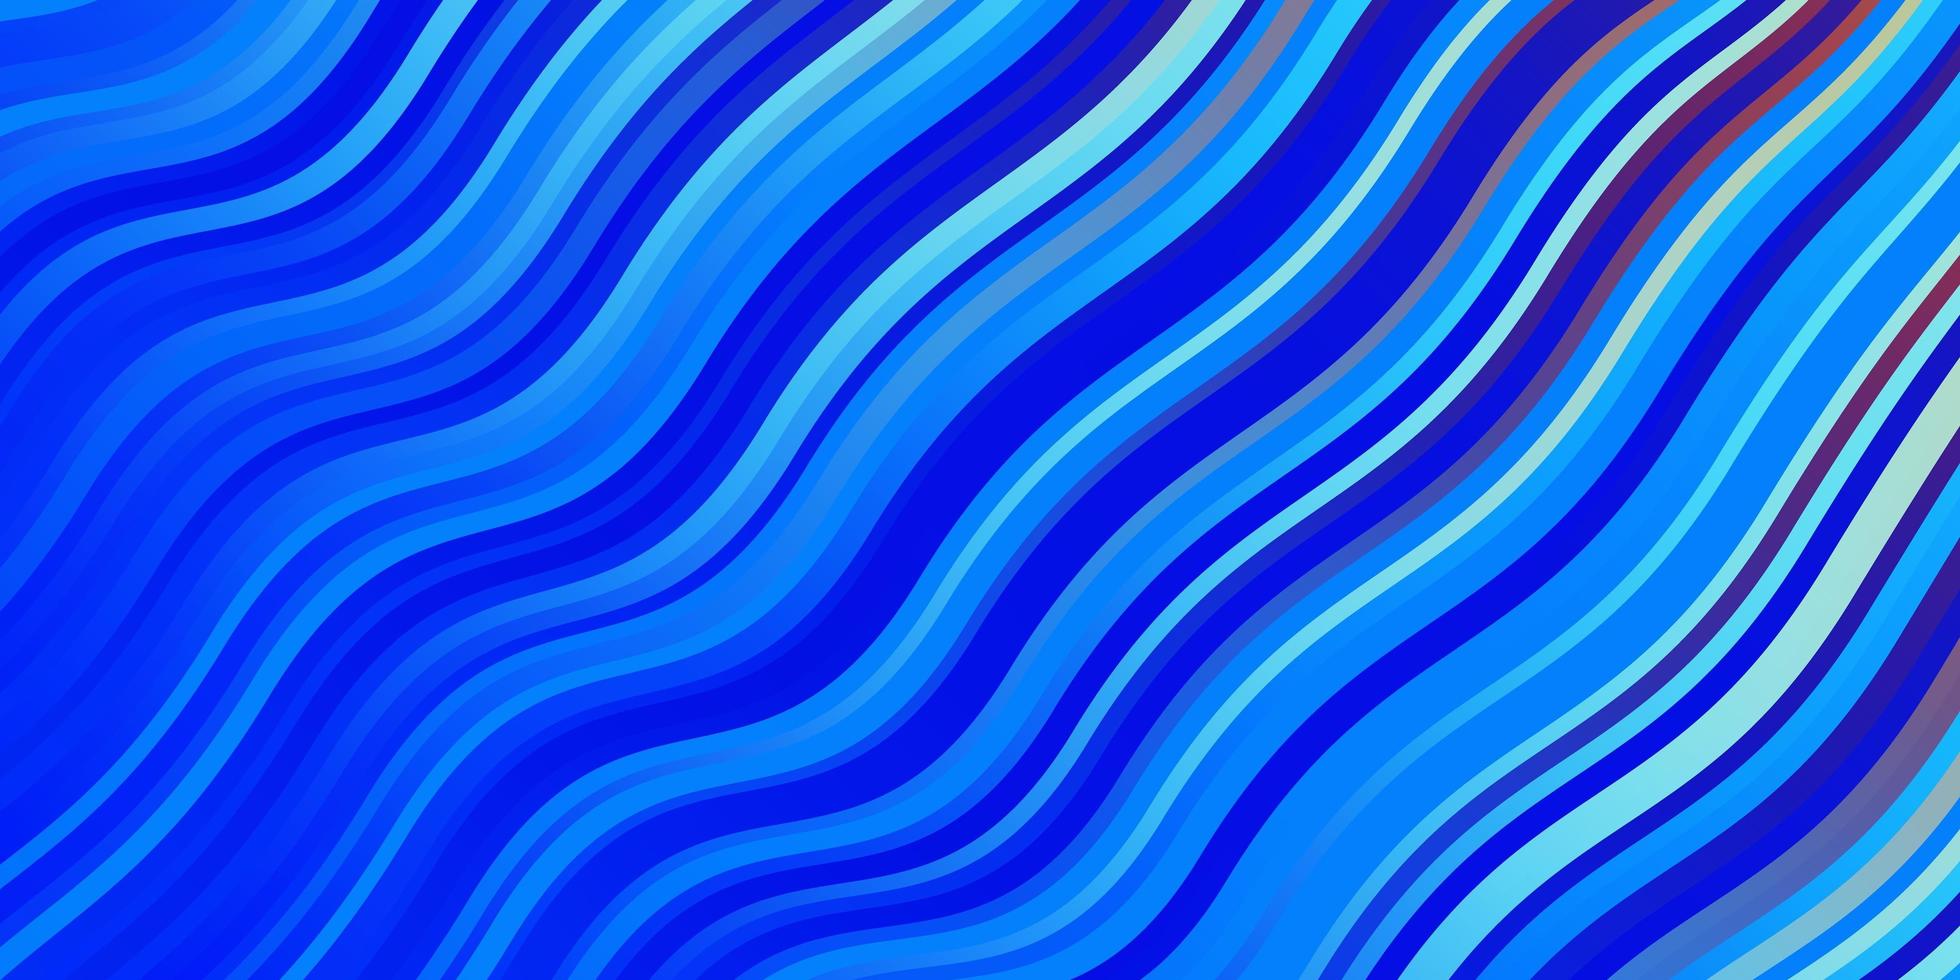 ljusblå, röd vektorbakgrund med kurvor. vektor